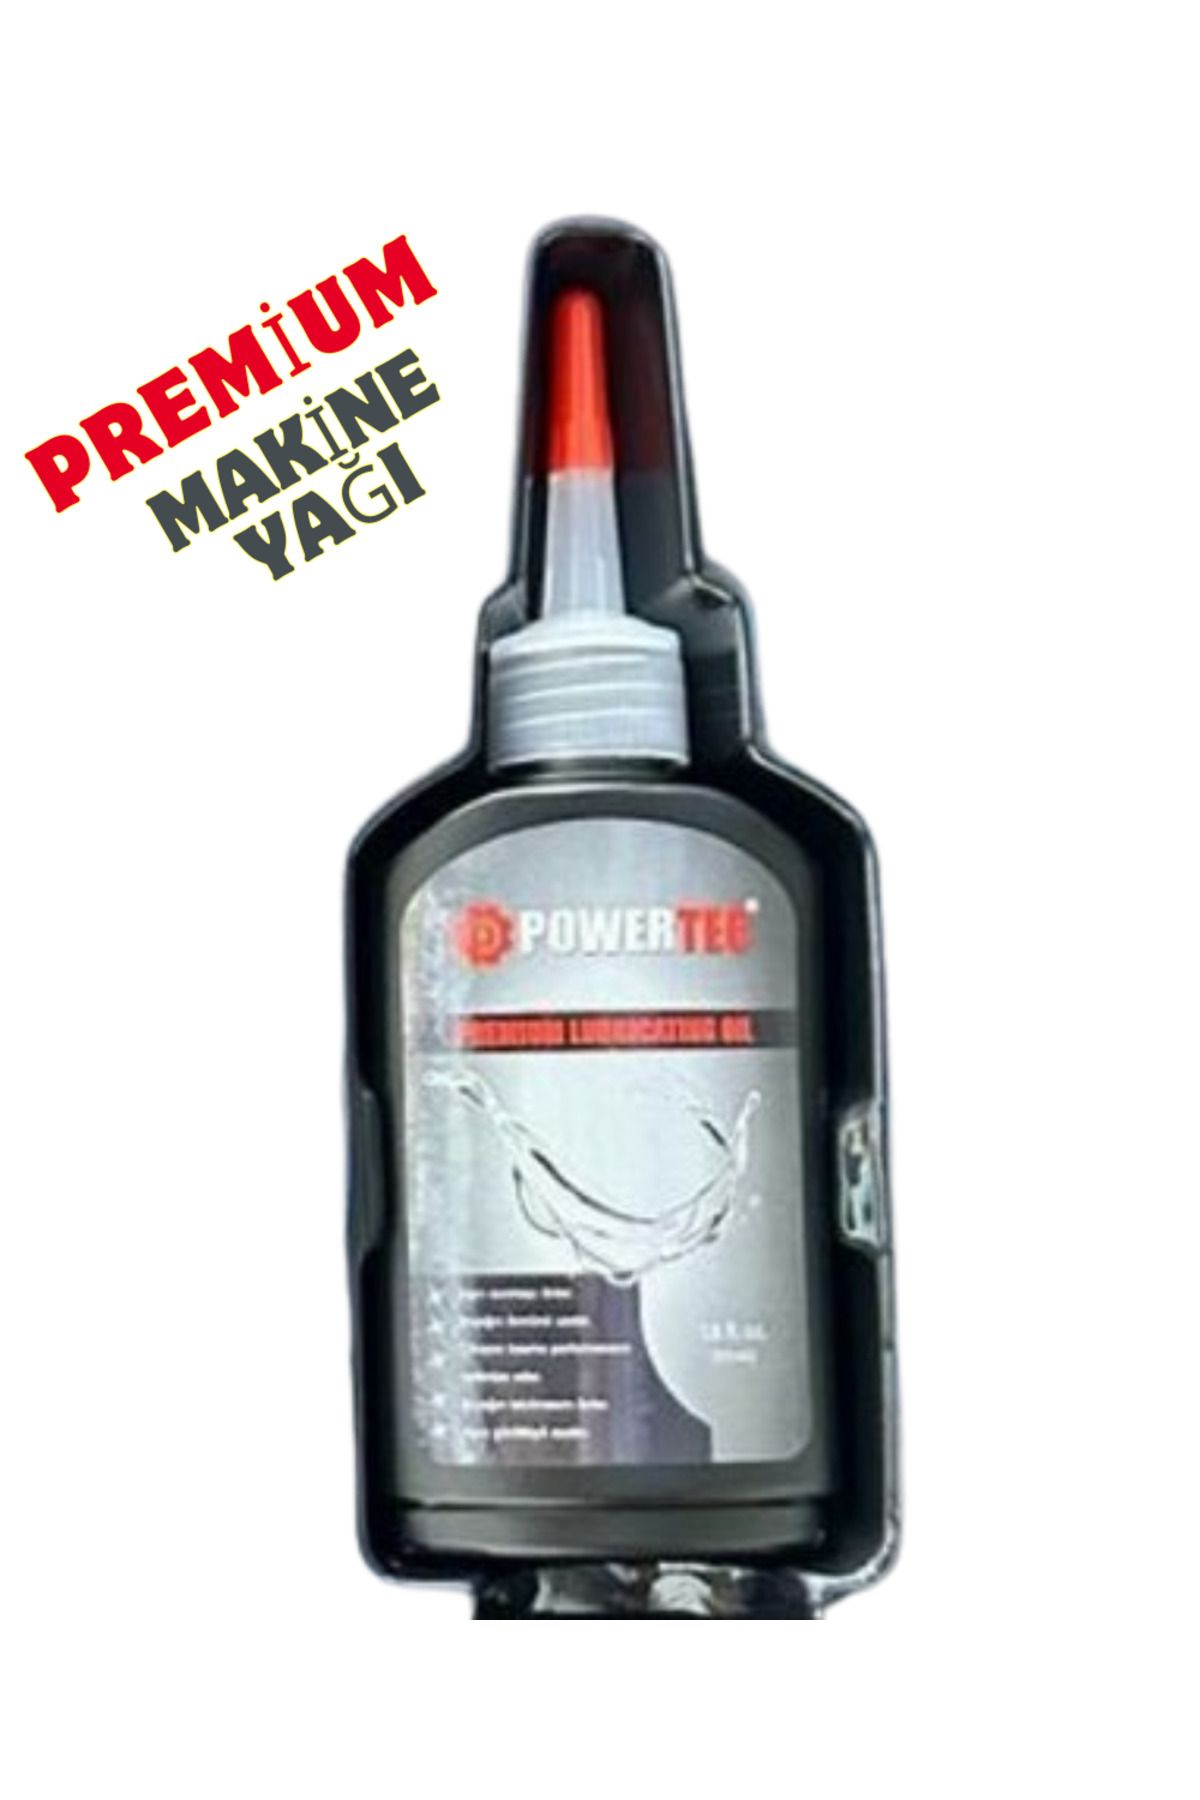 Powertec Premium Makine Yağı Tıraş Makinesi Bakım Yağı Saç Sakal Kesme Makinesi Bıçak Yağı (55ml)